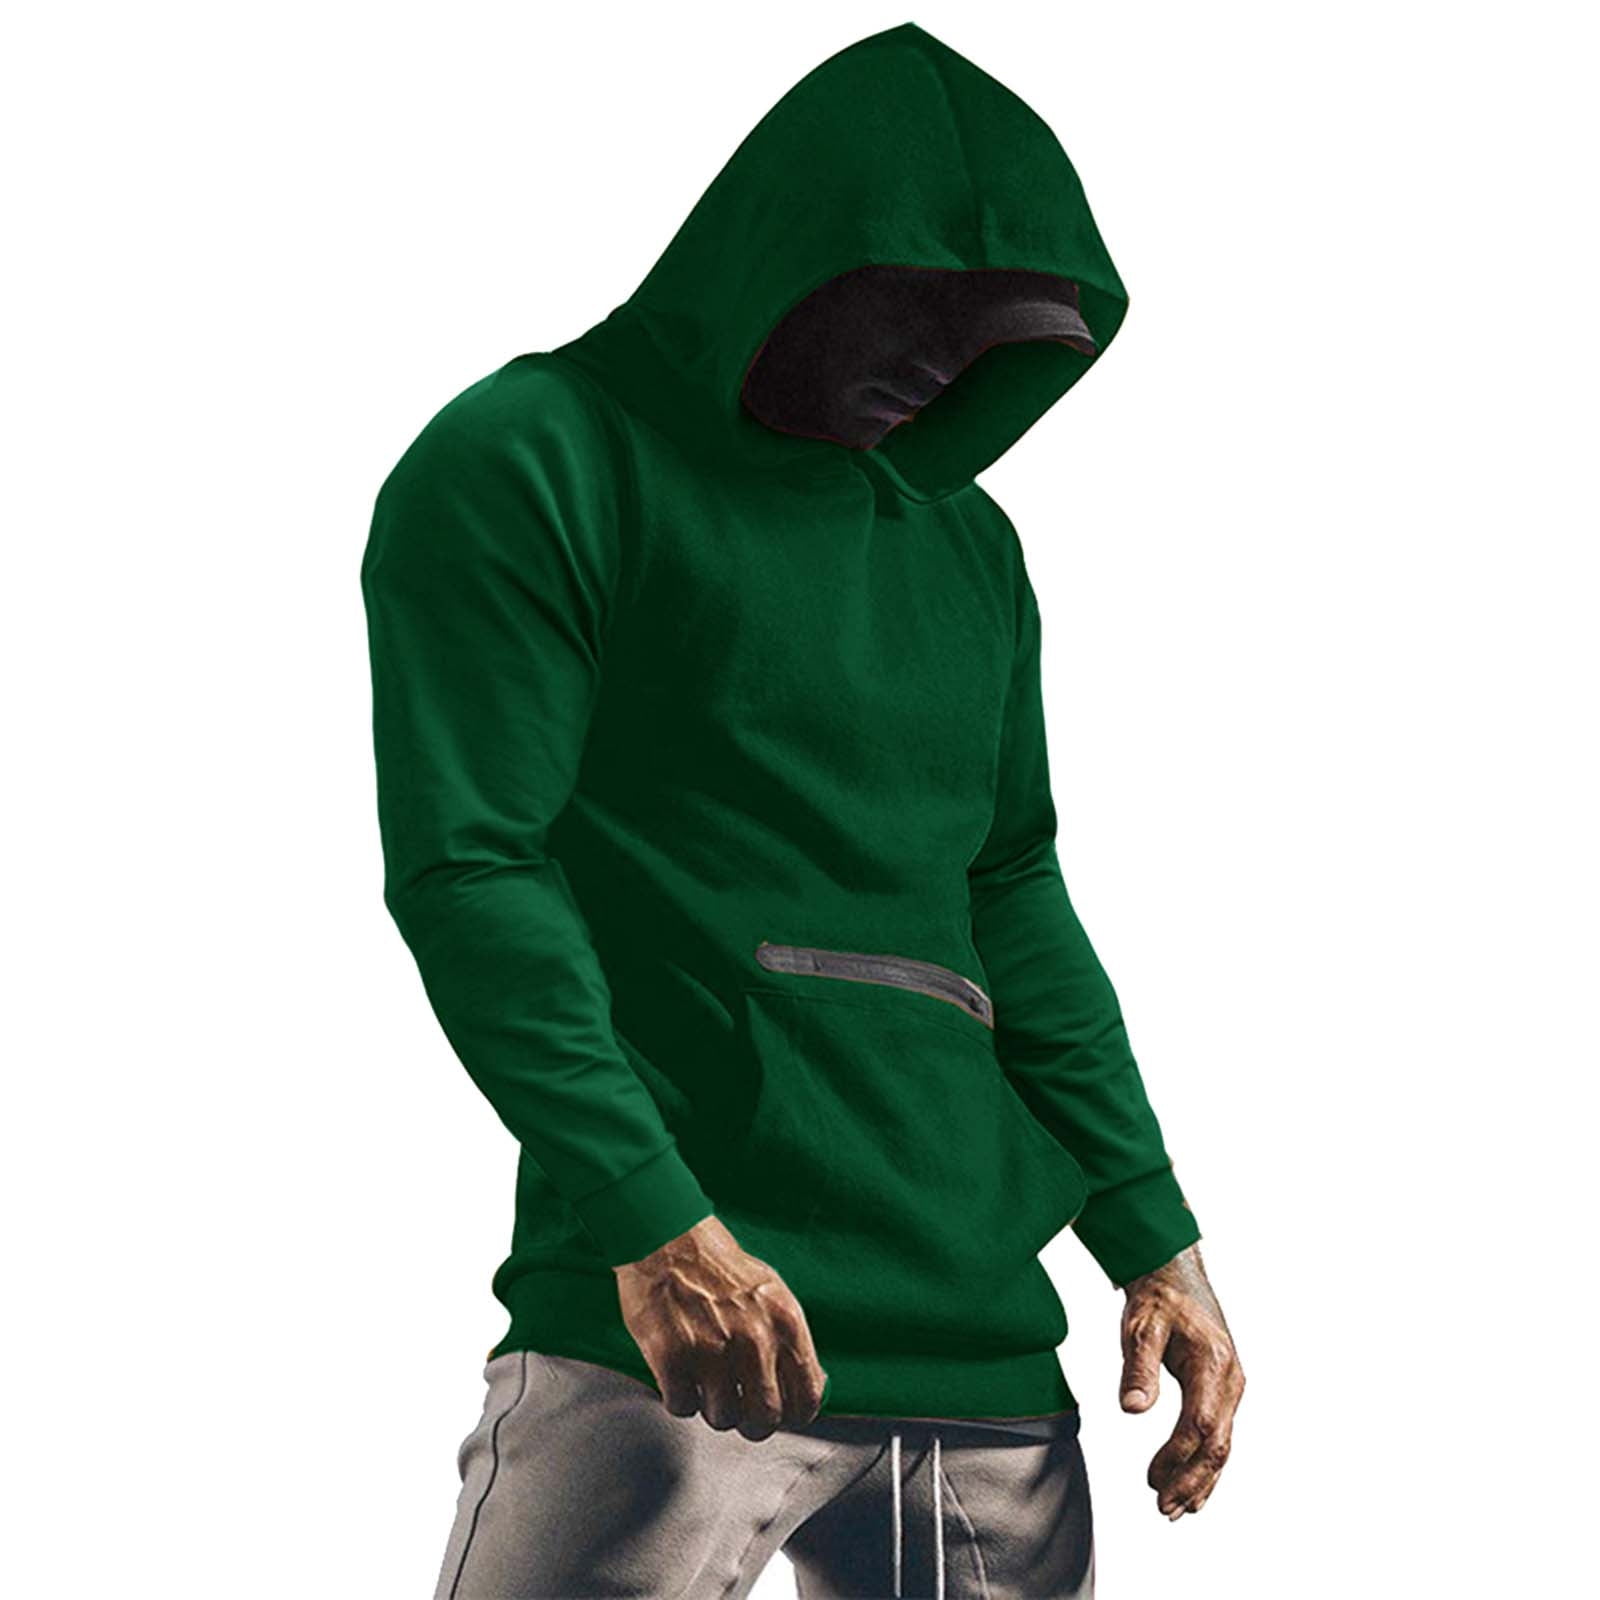 LEEy-world Hoodies For Boys Men's Full Zip Hoodie zippered Color Block  hooded slim Fit Long Sleeve Lightweight Sweatshirt Green,XL